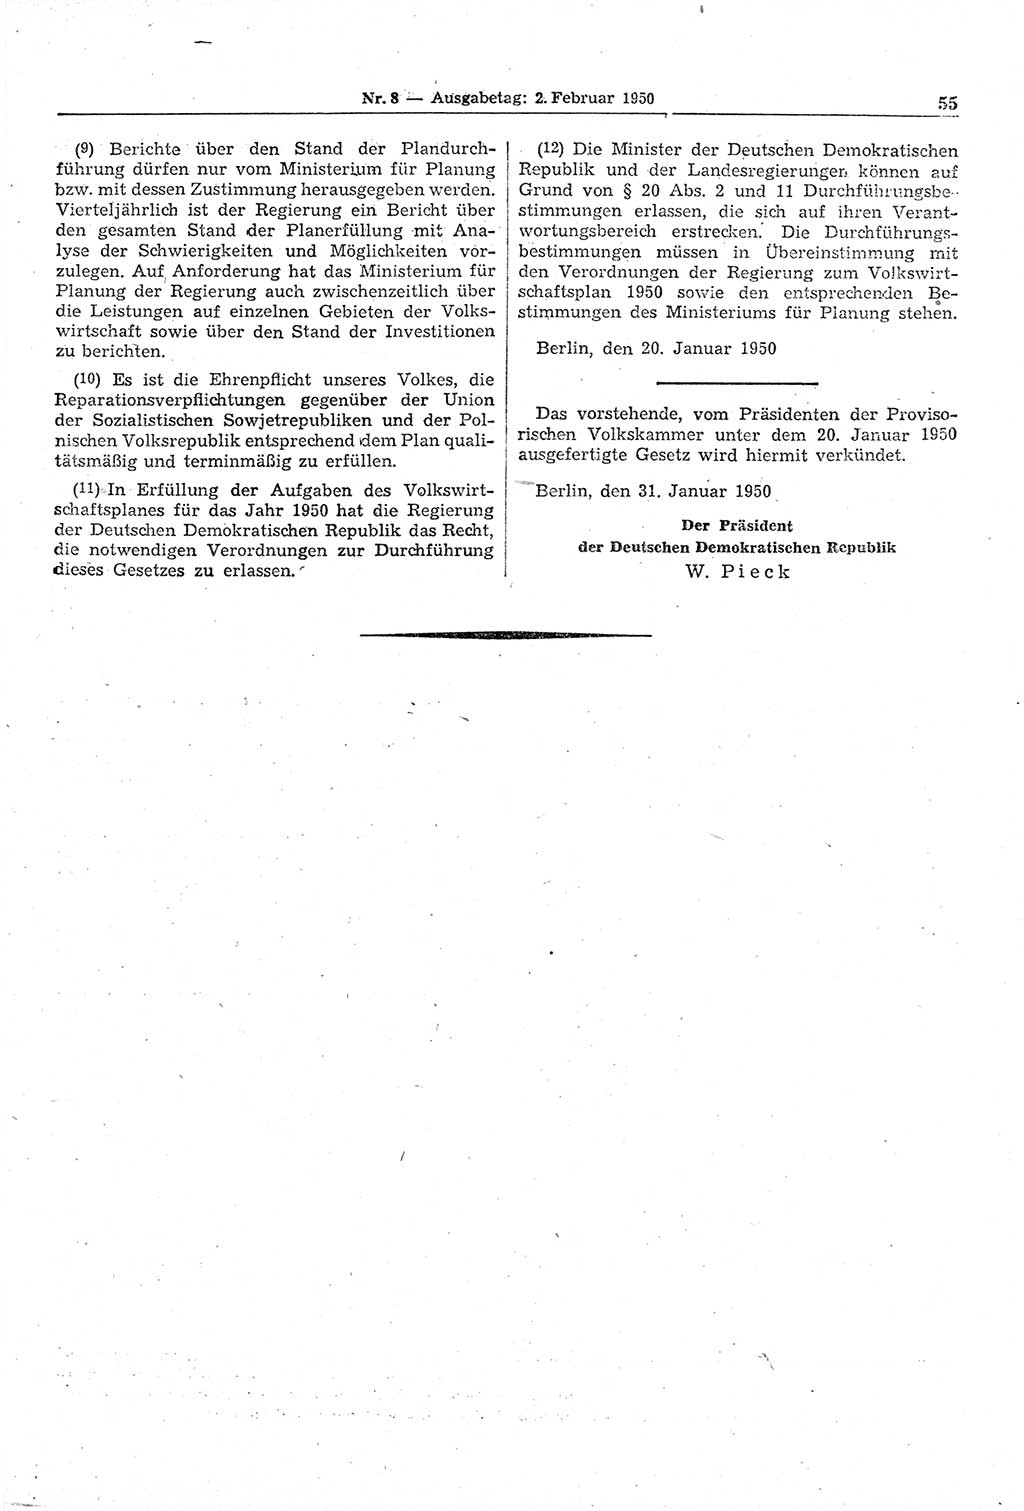 Gesetzblatt (GBl.) der Deutschen Demokratischen Republik (DDR) 1950, Seite 55 (GBl. DDR 1950, S. 55)